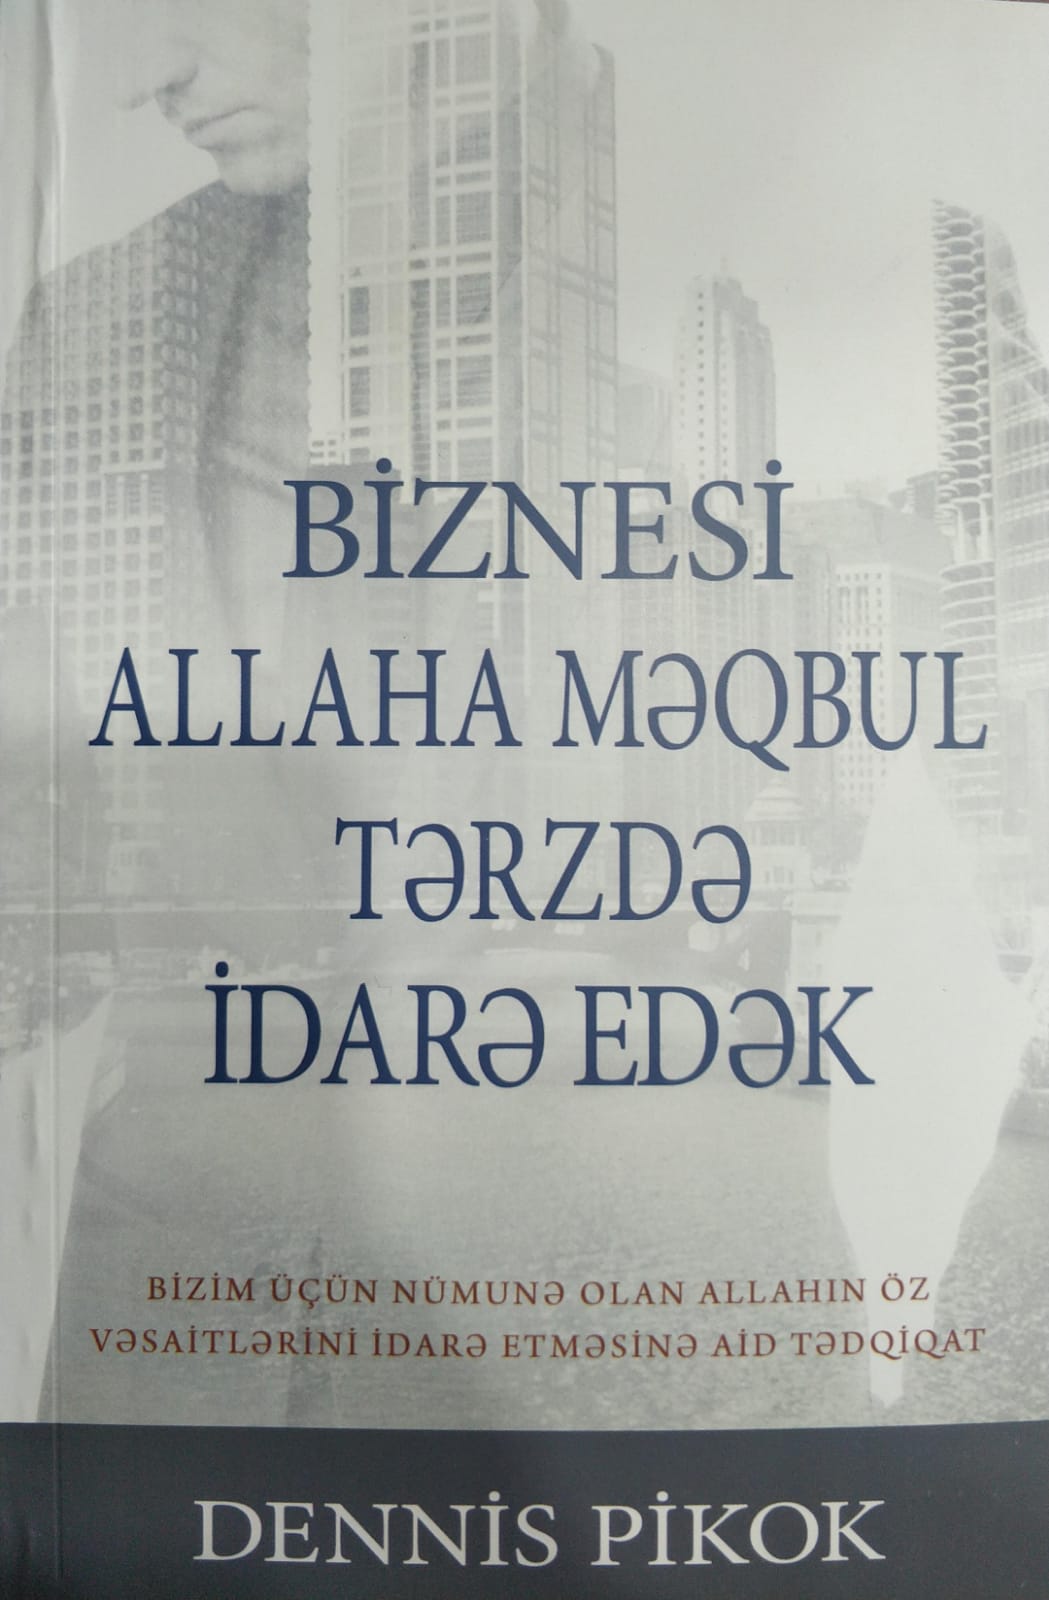 Biznesi Allaha Məqbul Tərzdə İdarə Edək